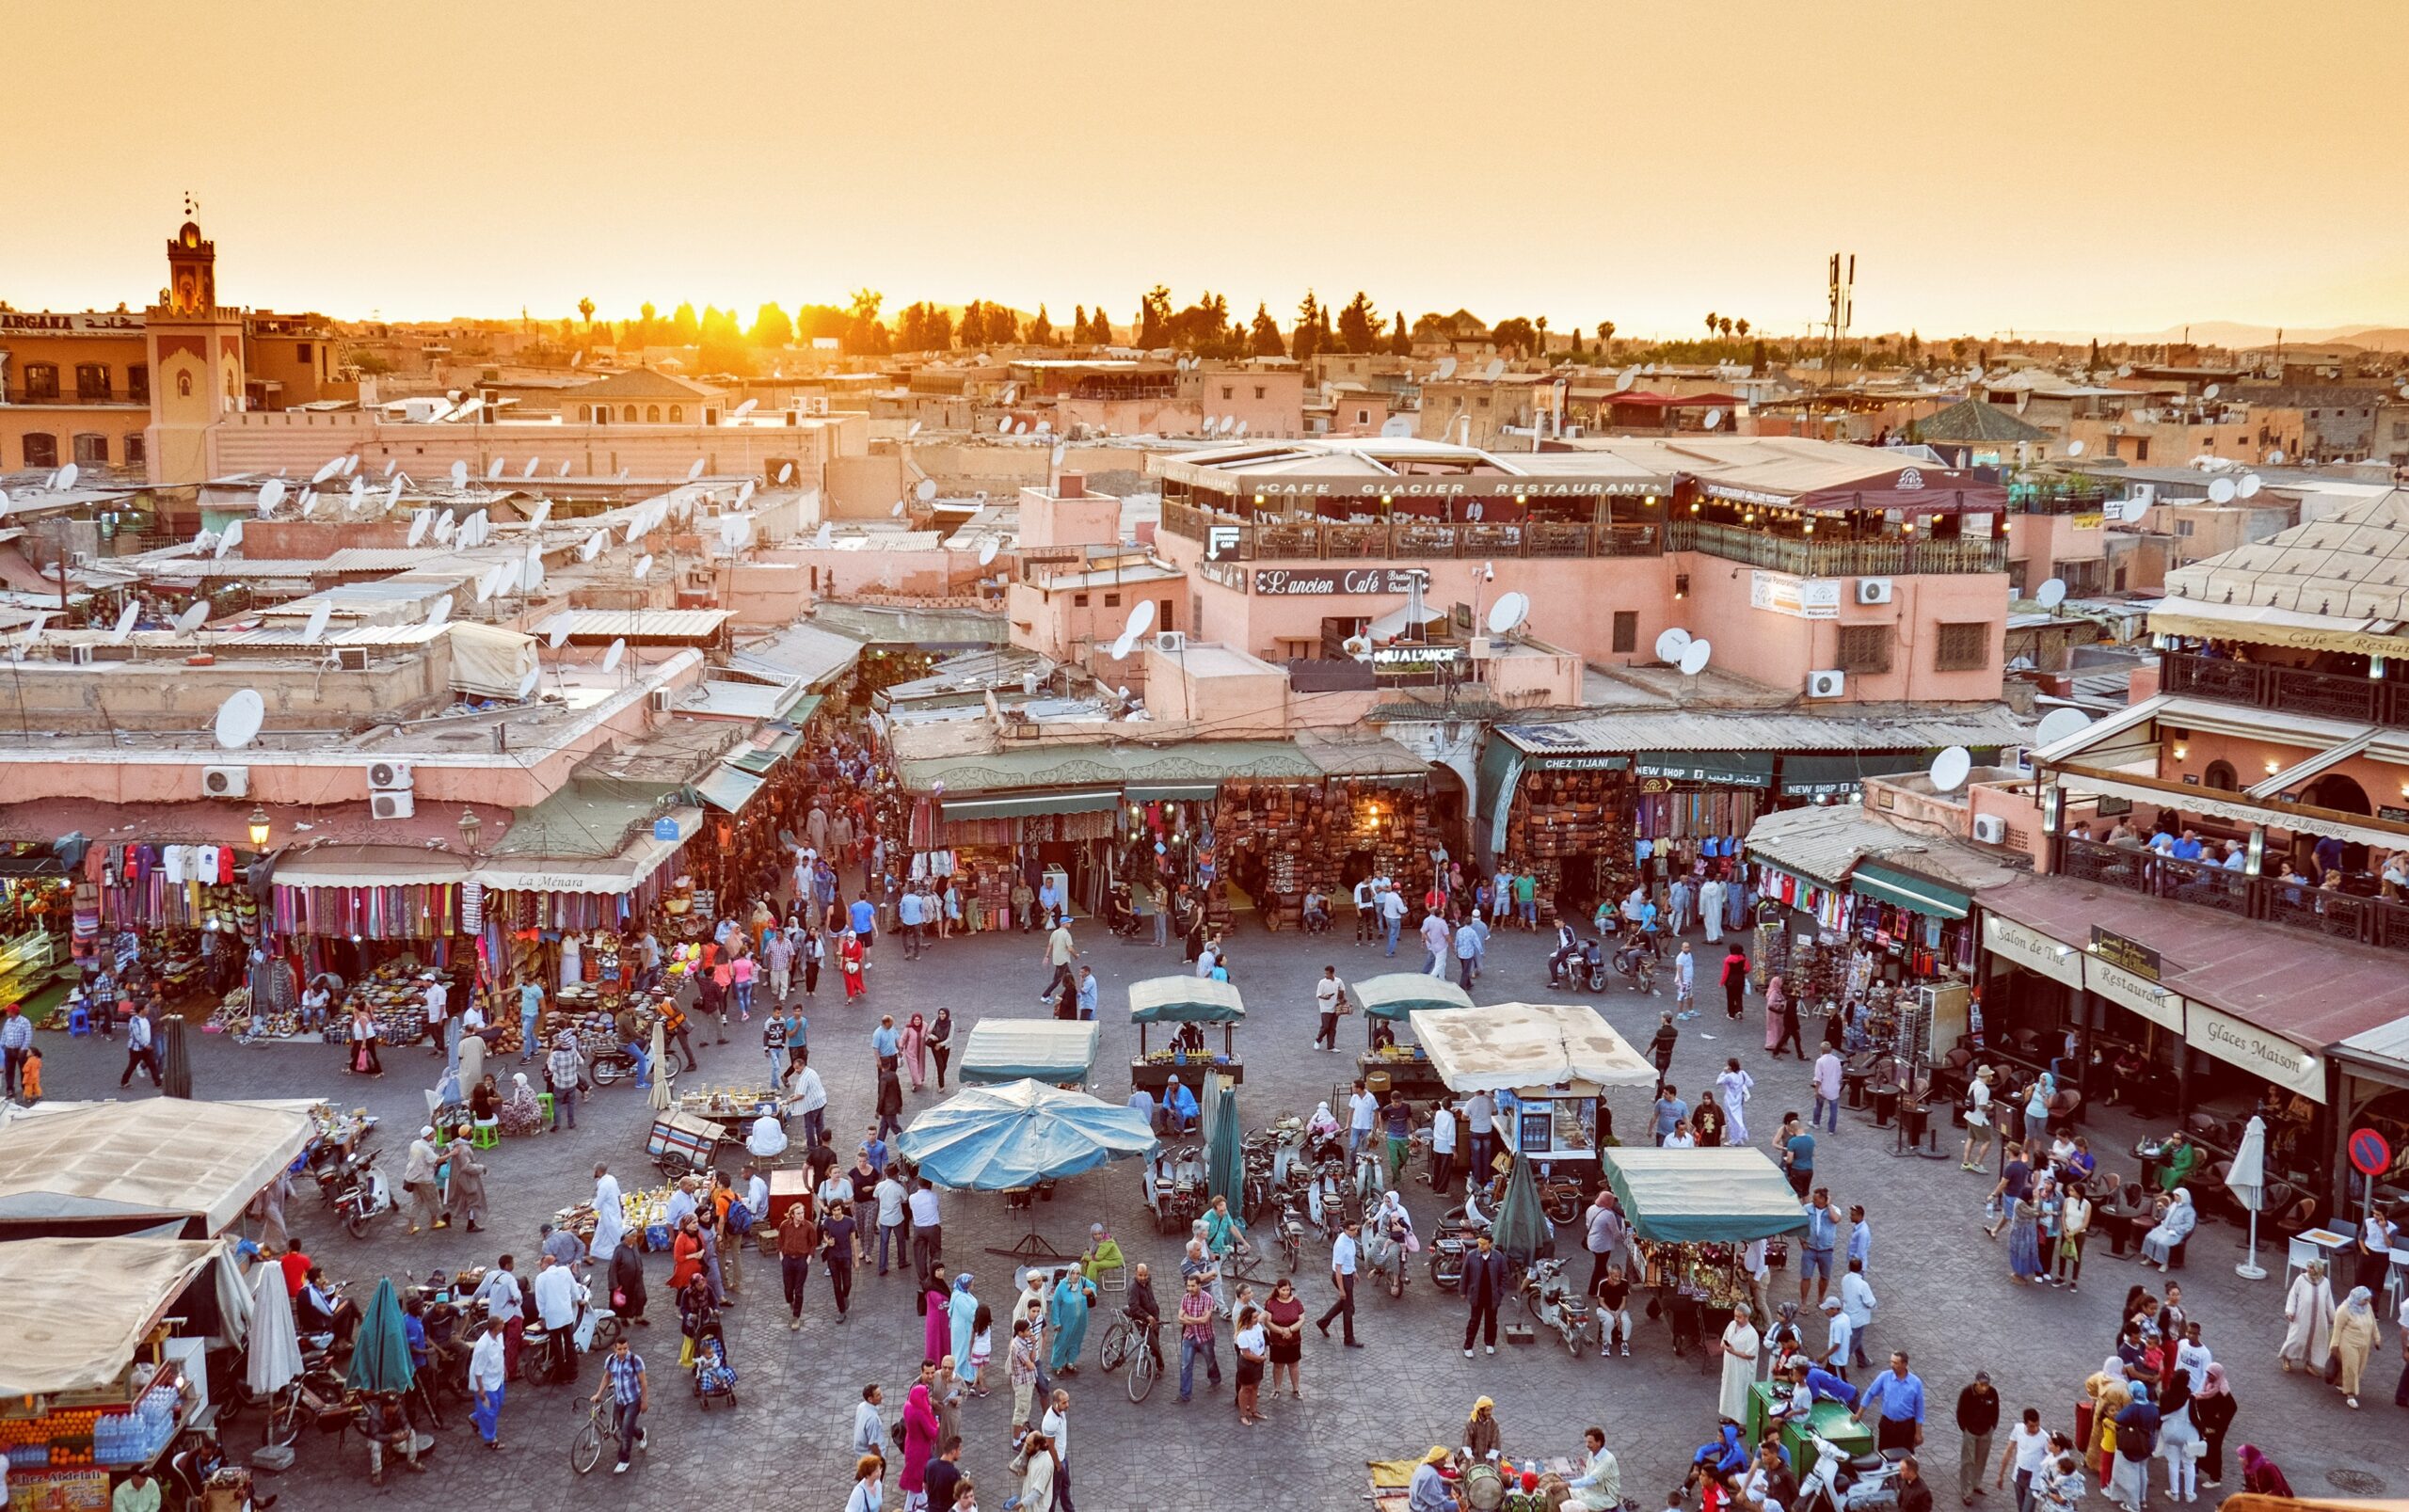 L'ordine nel caos a Marrakech